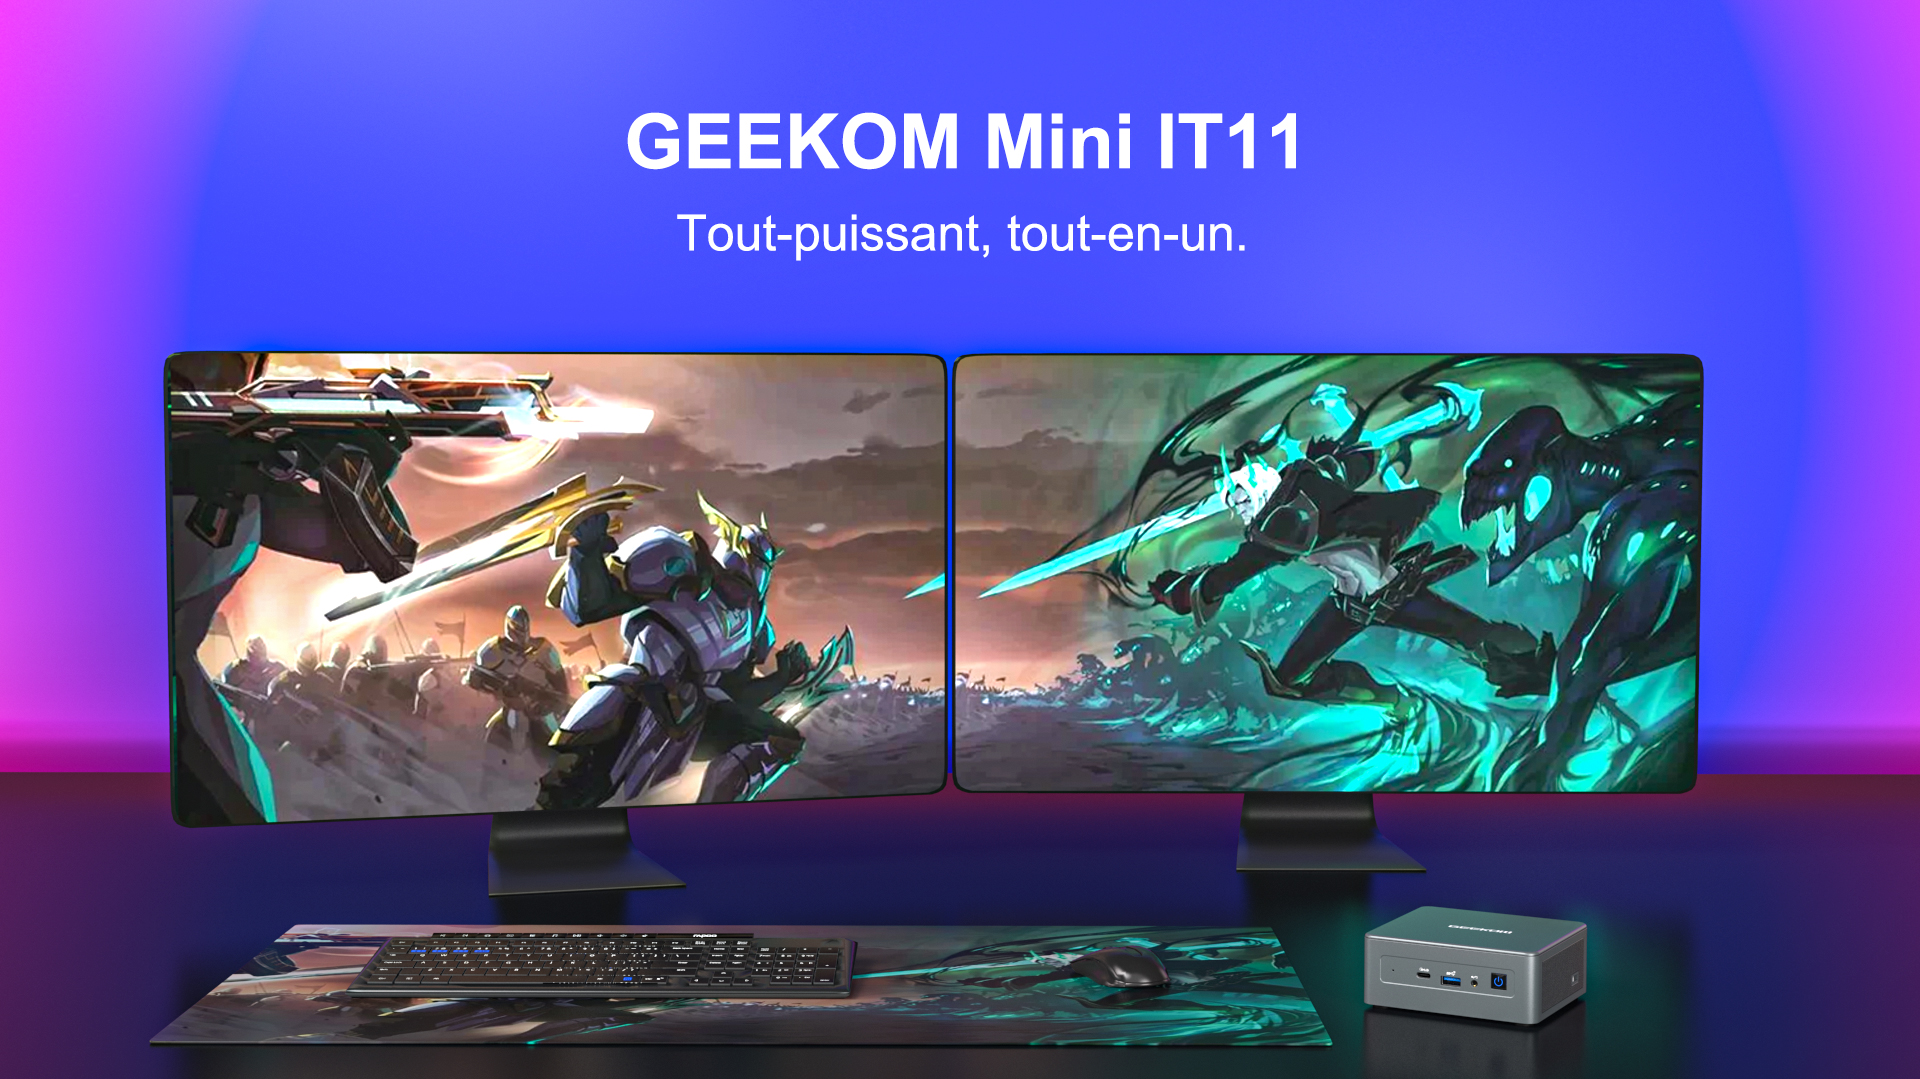 GEEKOM Mini IT11-Tout-puissant, tout-en-un.